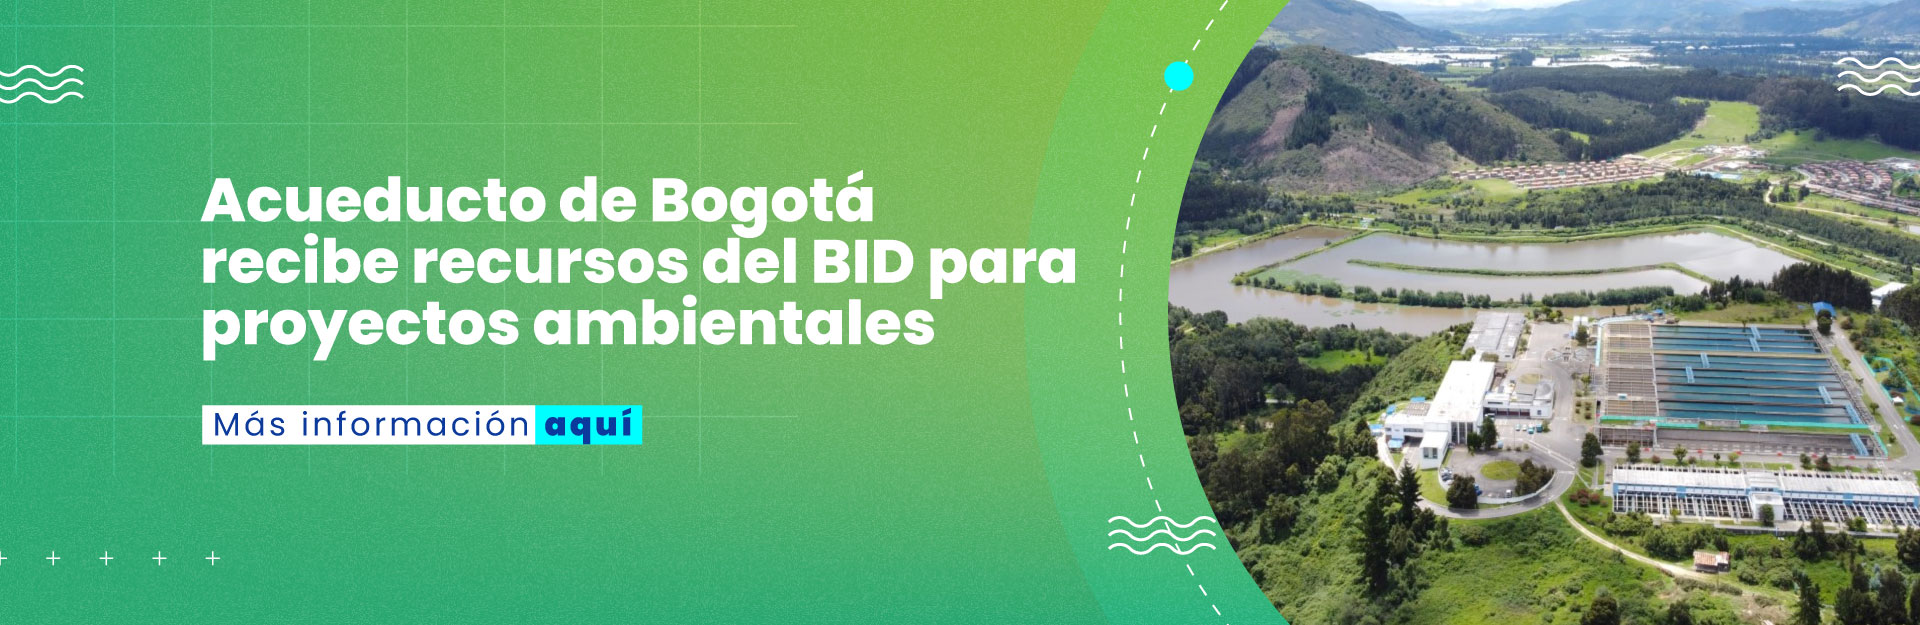 Acueducto de Bogotá recibe recursos del BID para proyectos ambientales